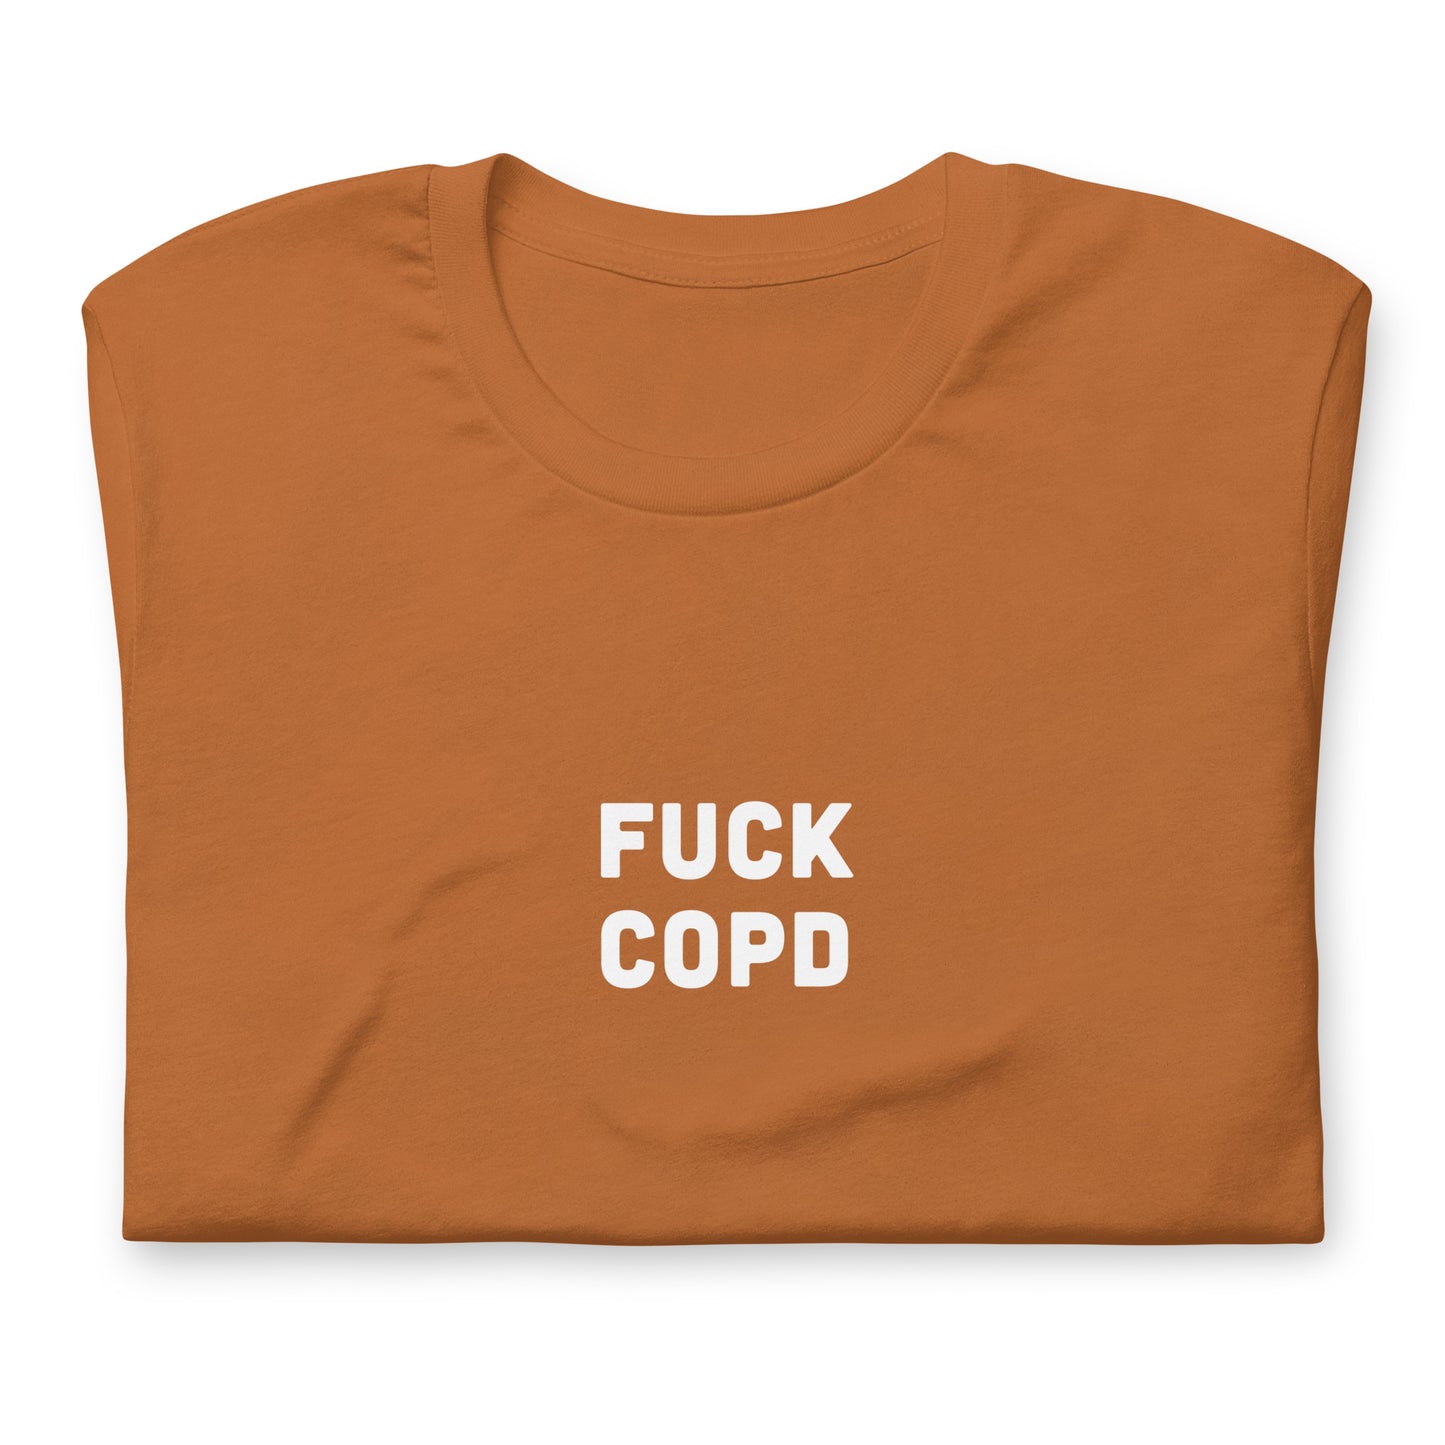 Fuck Copd T-Shirt Size L Color Navy